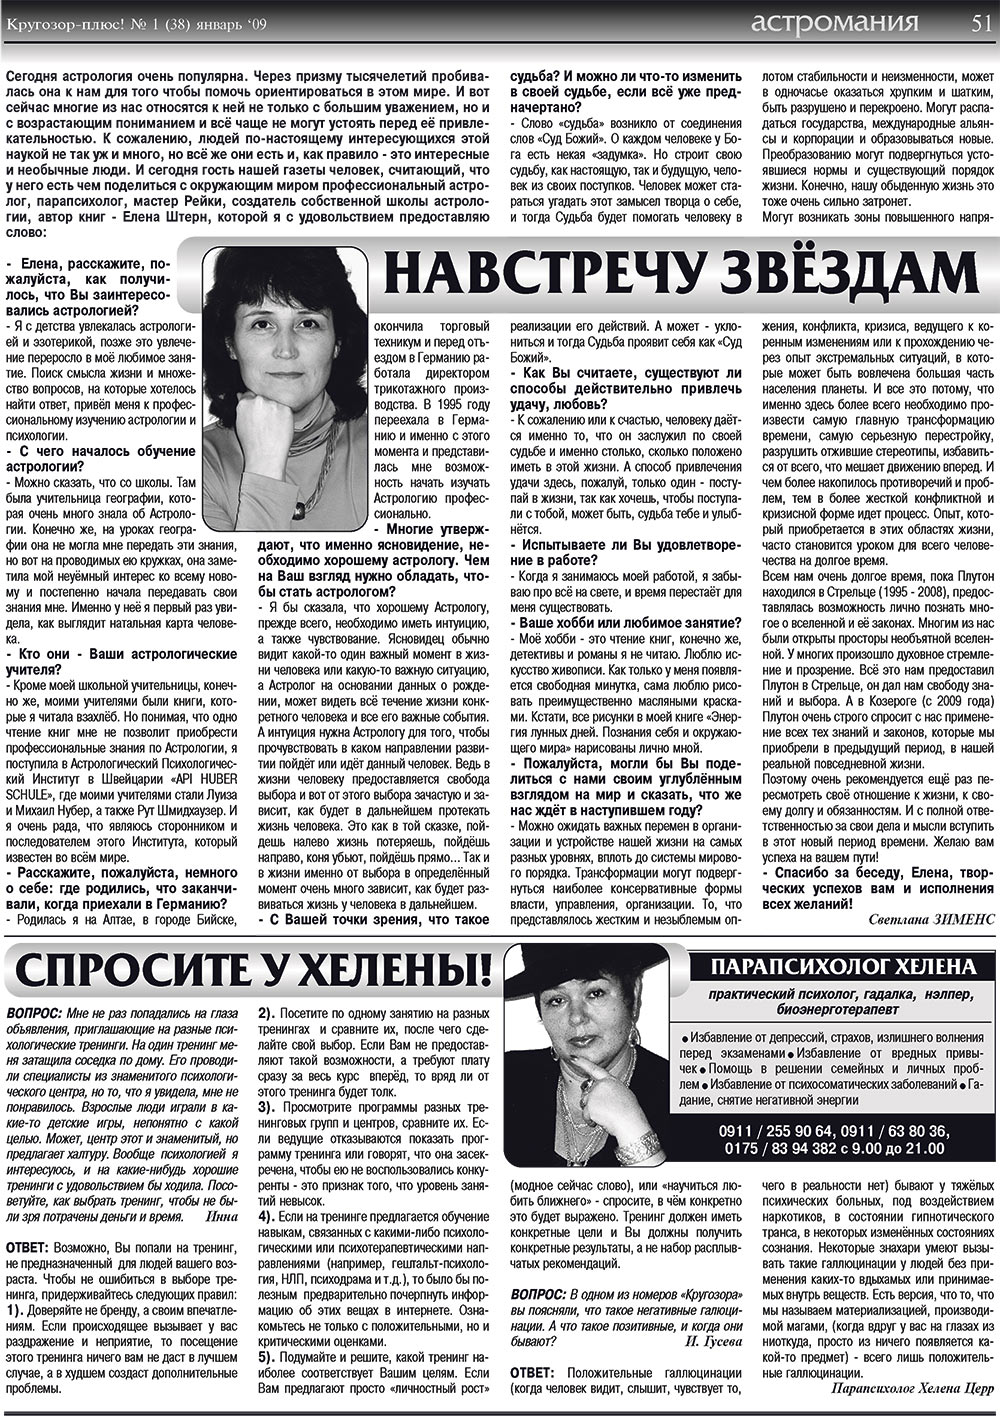 Кругозор плюс!, газета. 2009 №1 стр.51